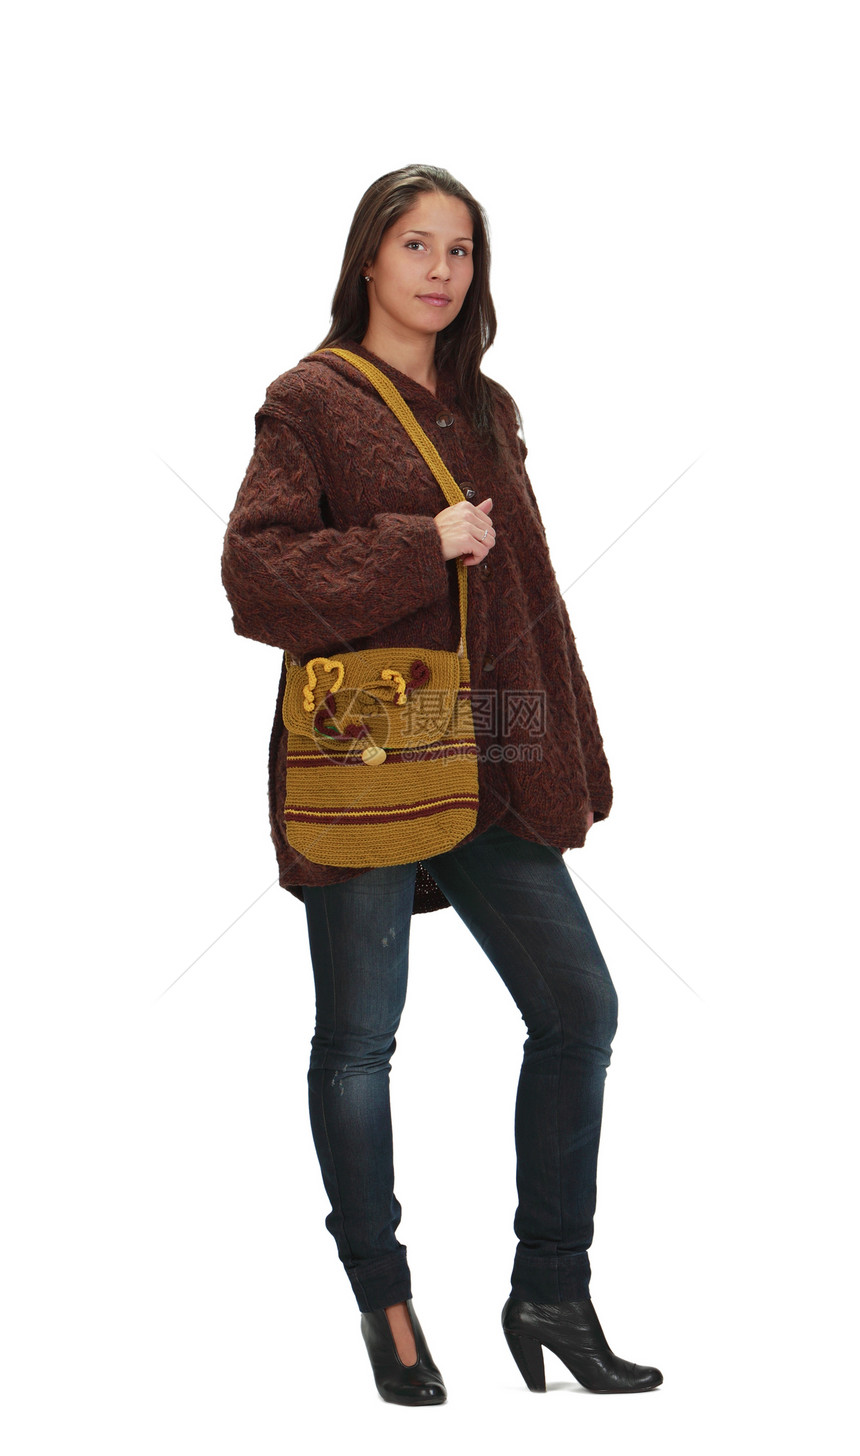 青年妇女青少年毛衣牛仔裤钱包夹克棕色套衫姿势针织品黑发图片